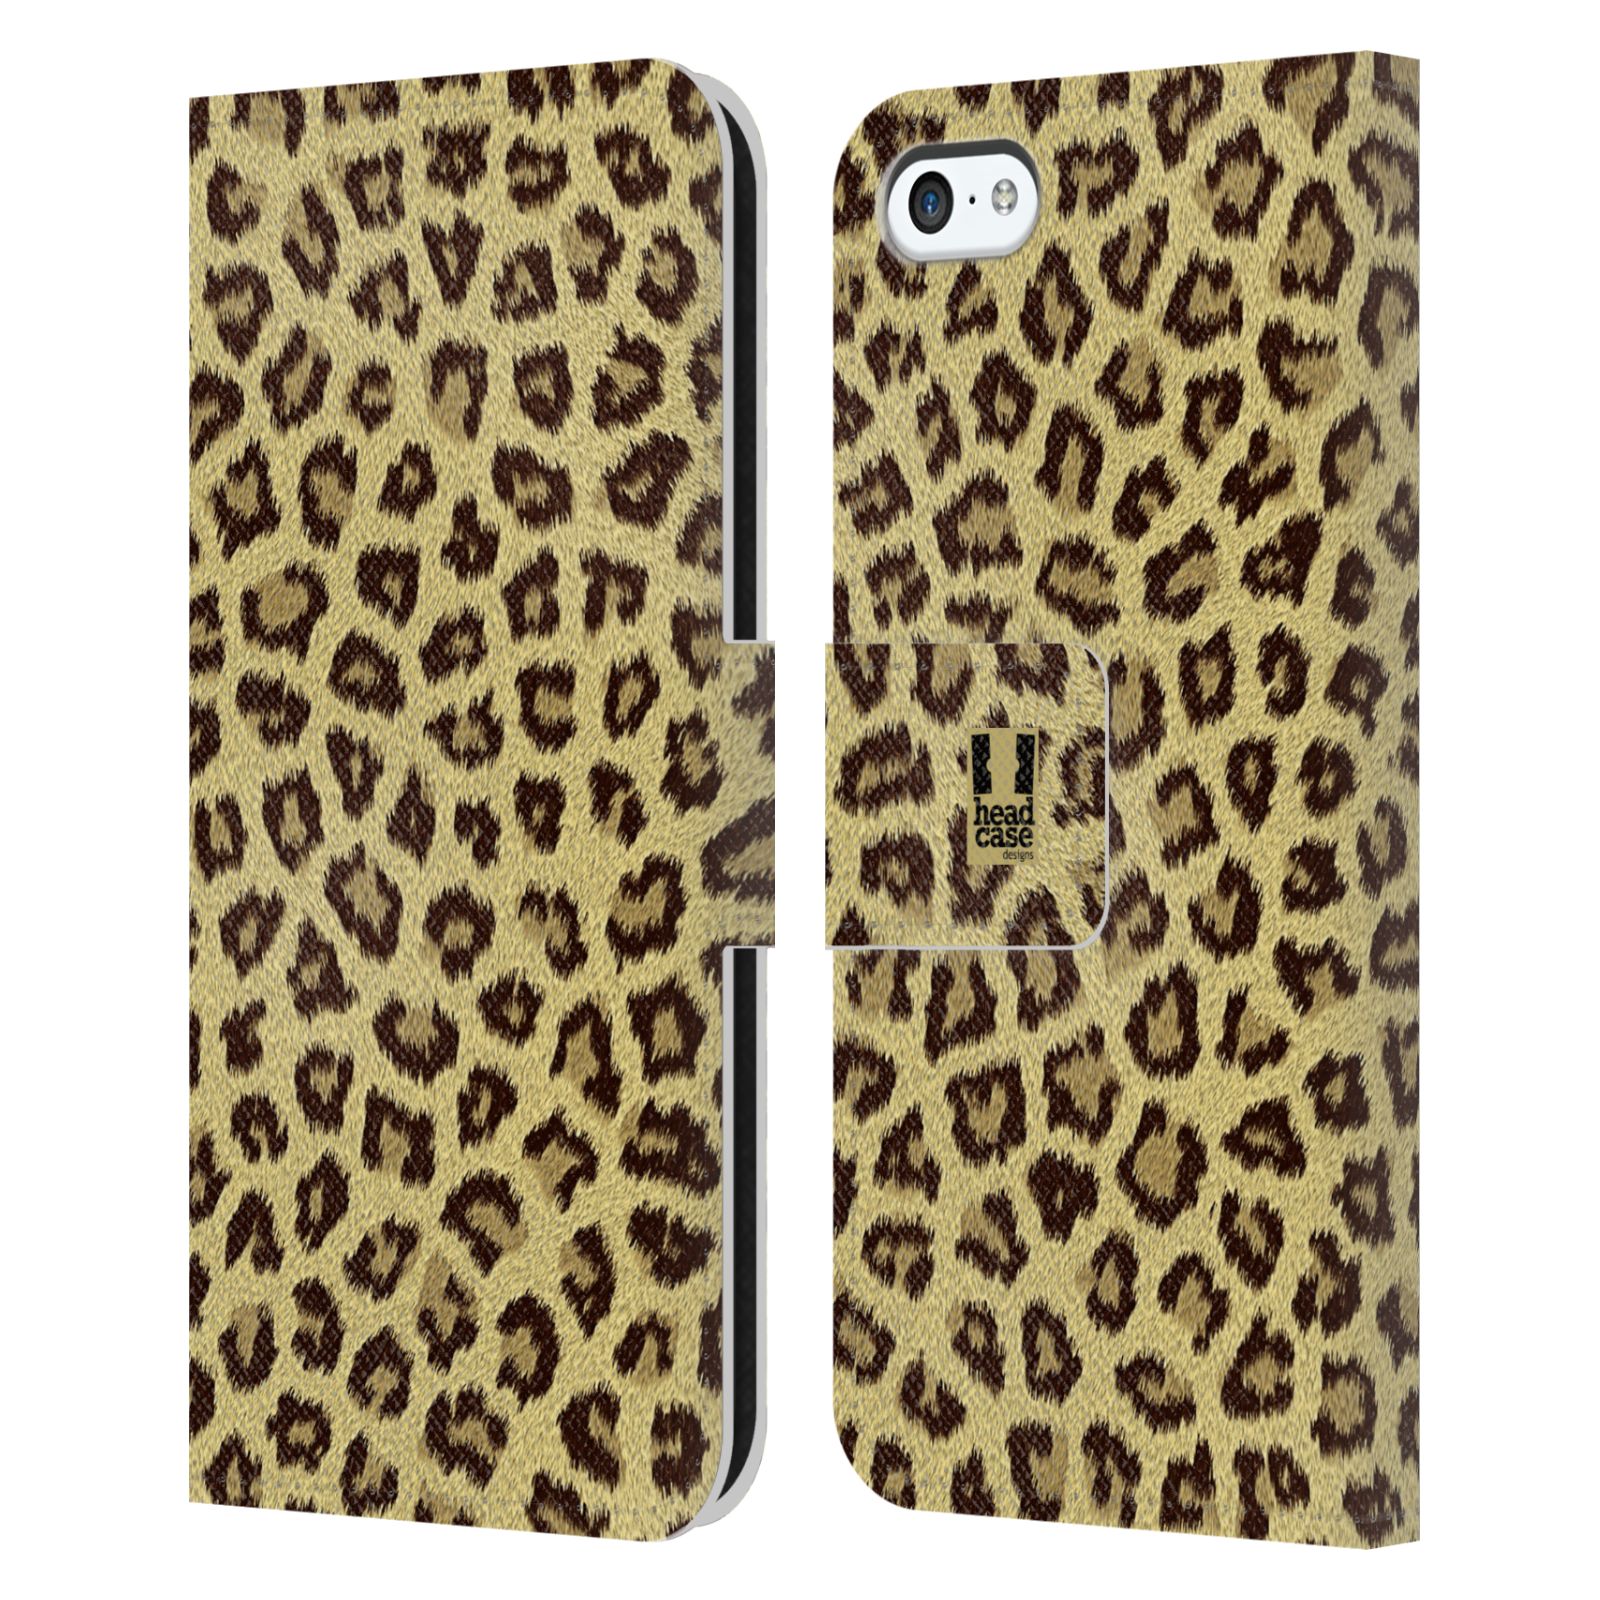 HEAD CASE Flipové pouzdro pro mobil Apple Iphone 5C zvíře srst divoká kolekce jaguár, gepard